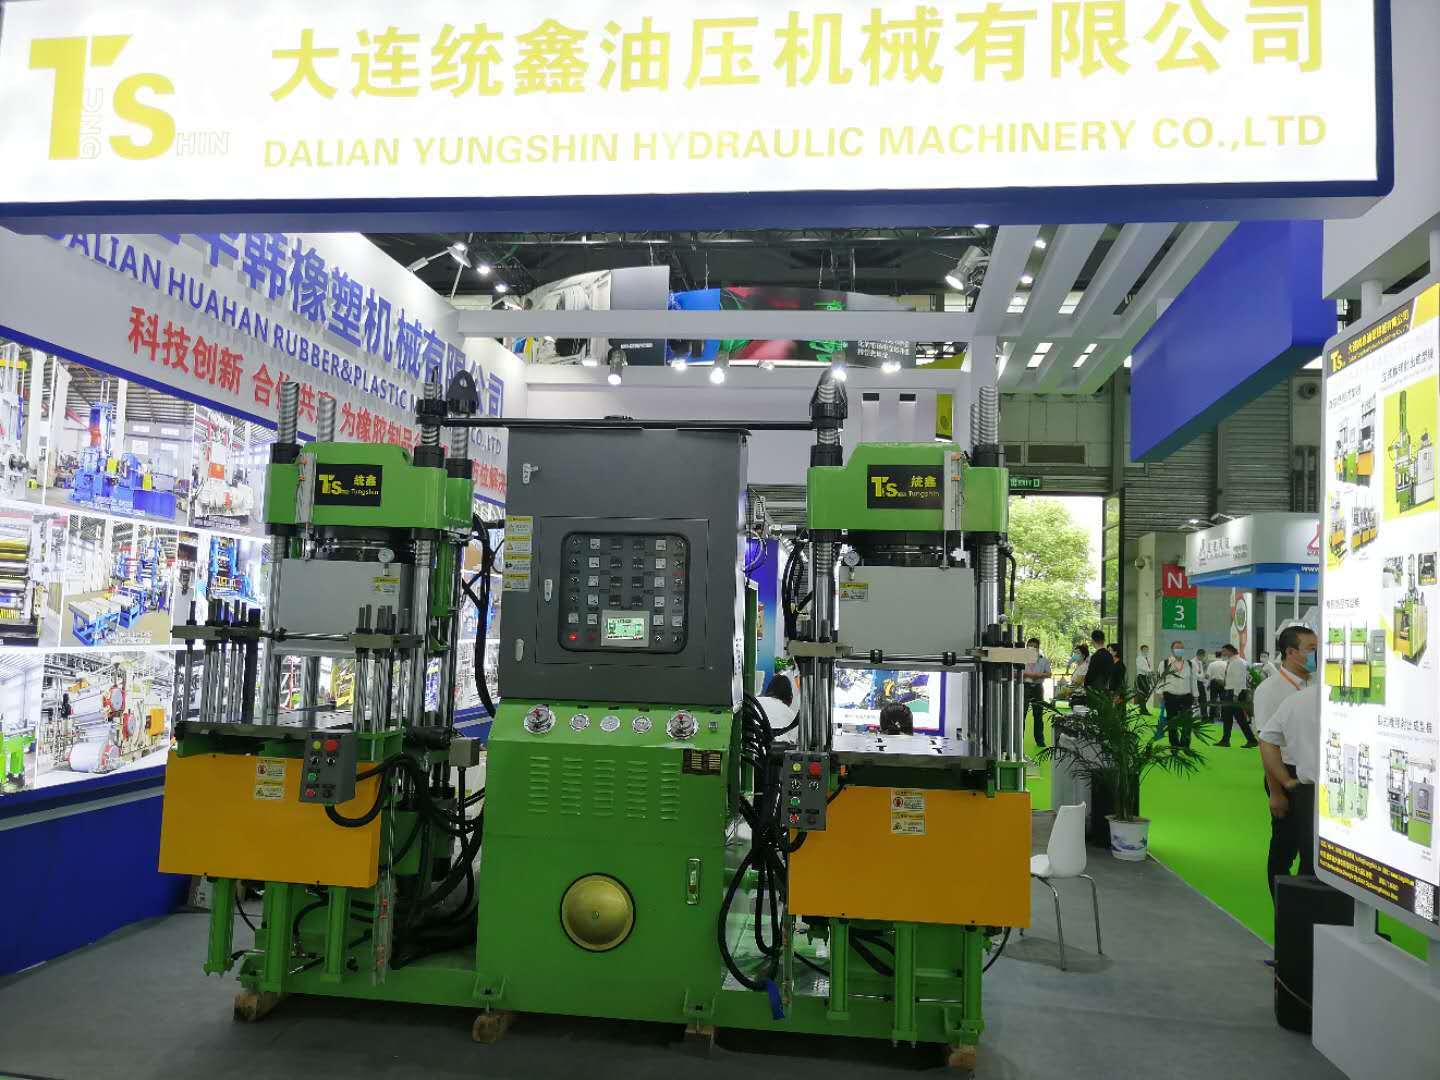 第二十届中国国际橡胶技术展览会